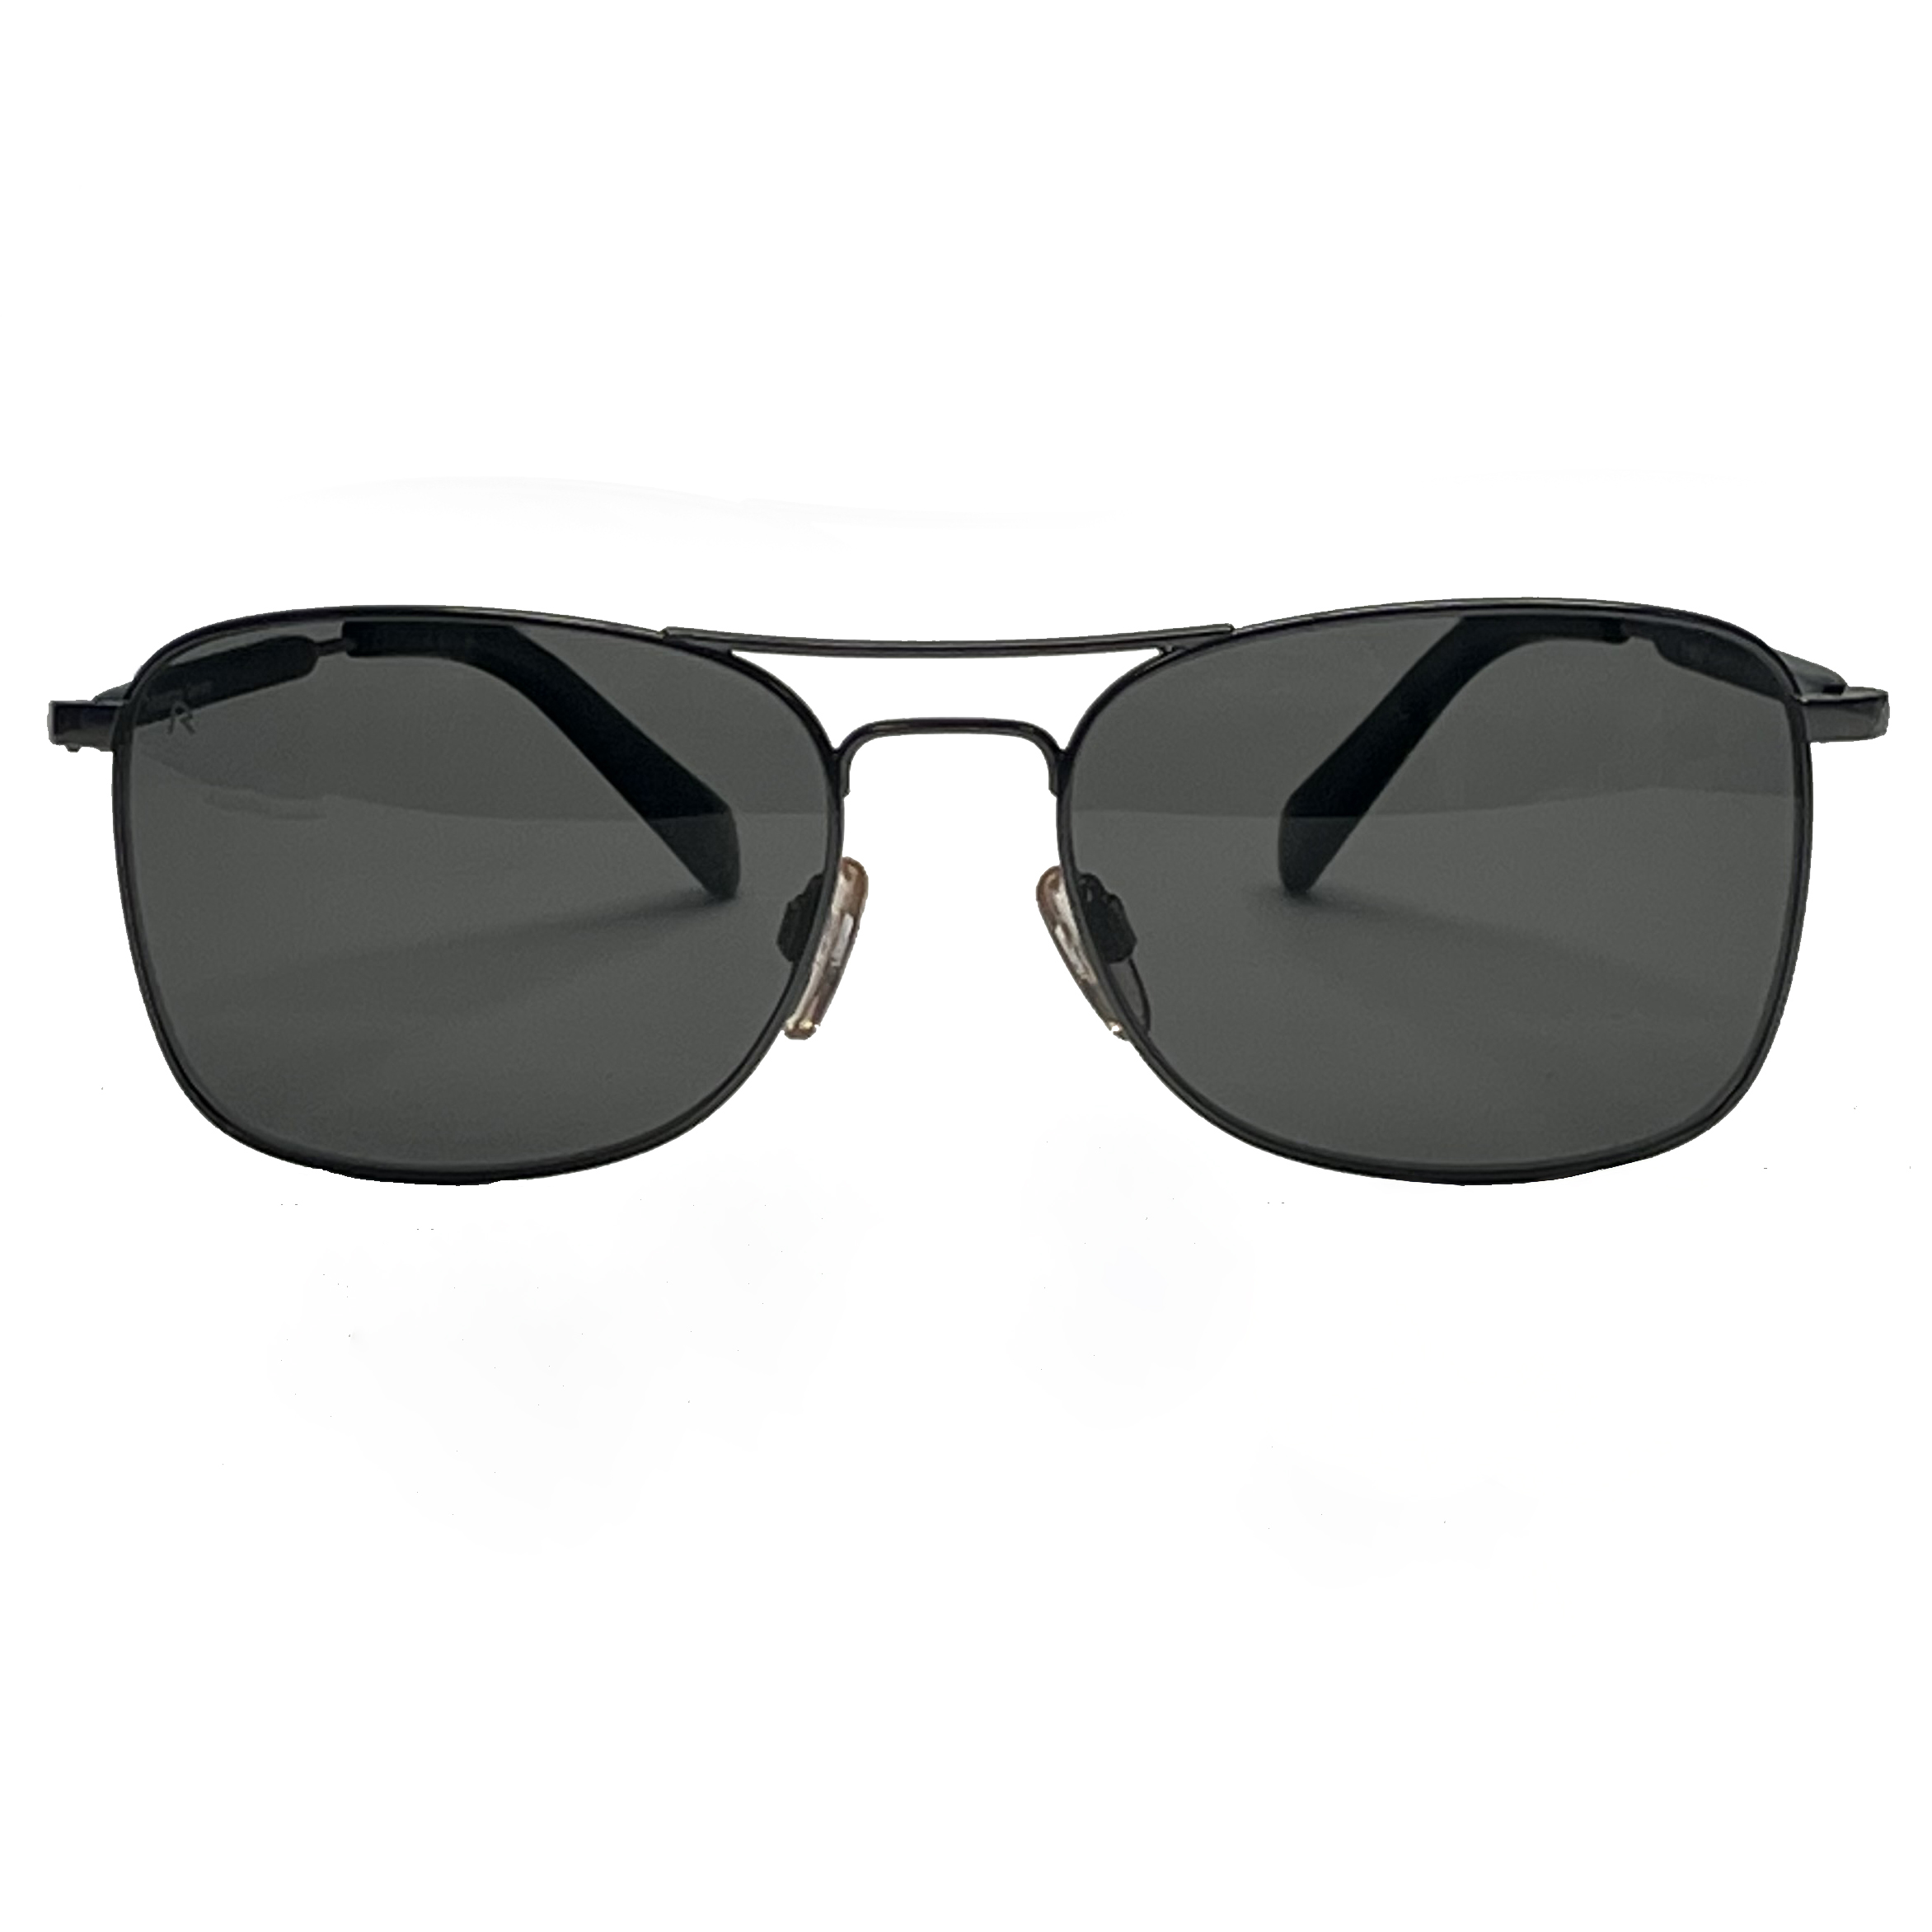 نکته خرید - قیمت روز عینک آفتابی رودن اشتوک مدل R1415 خرید